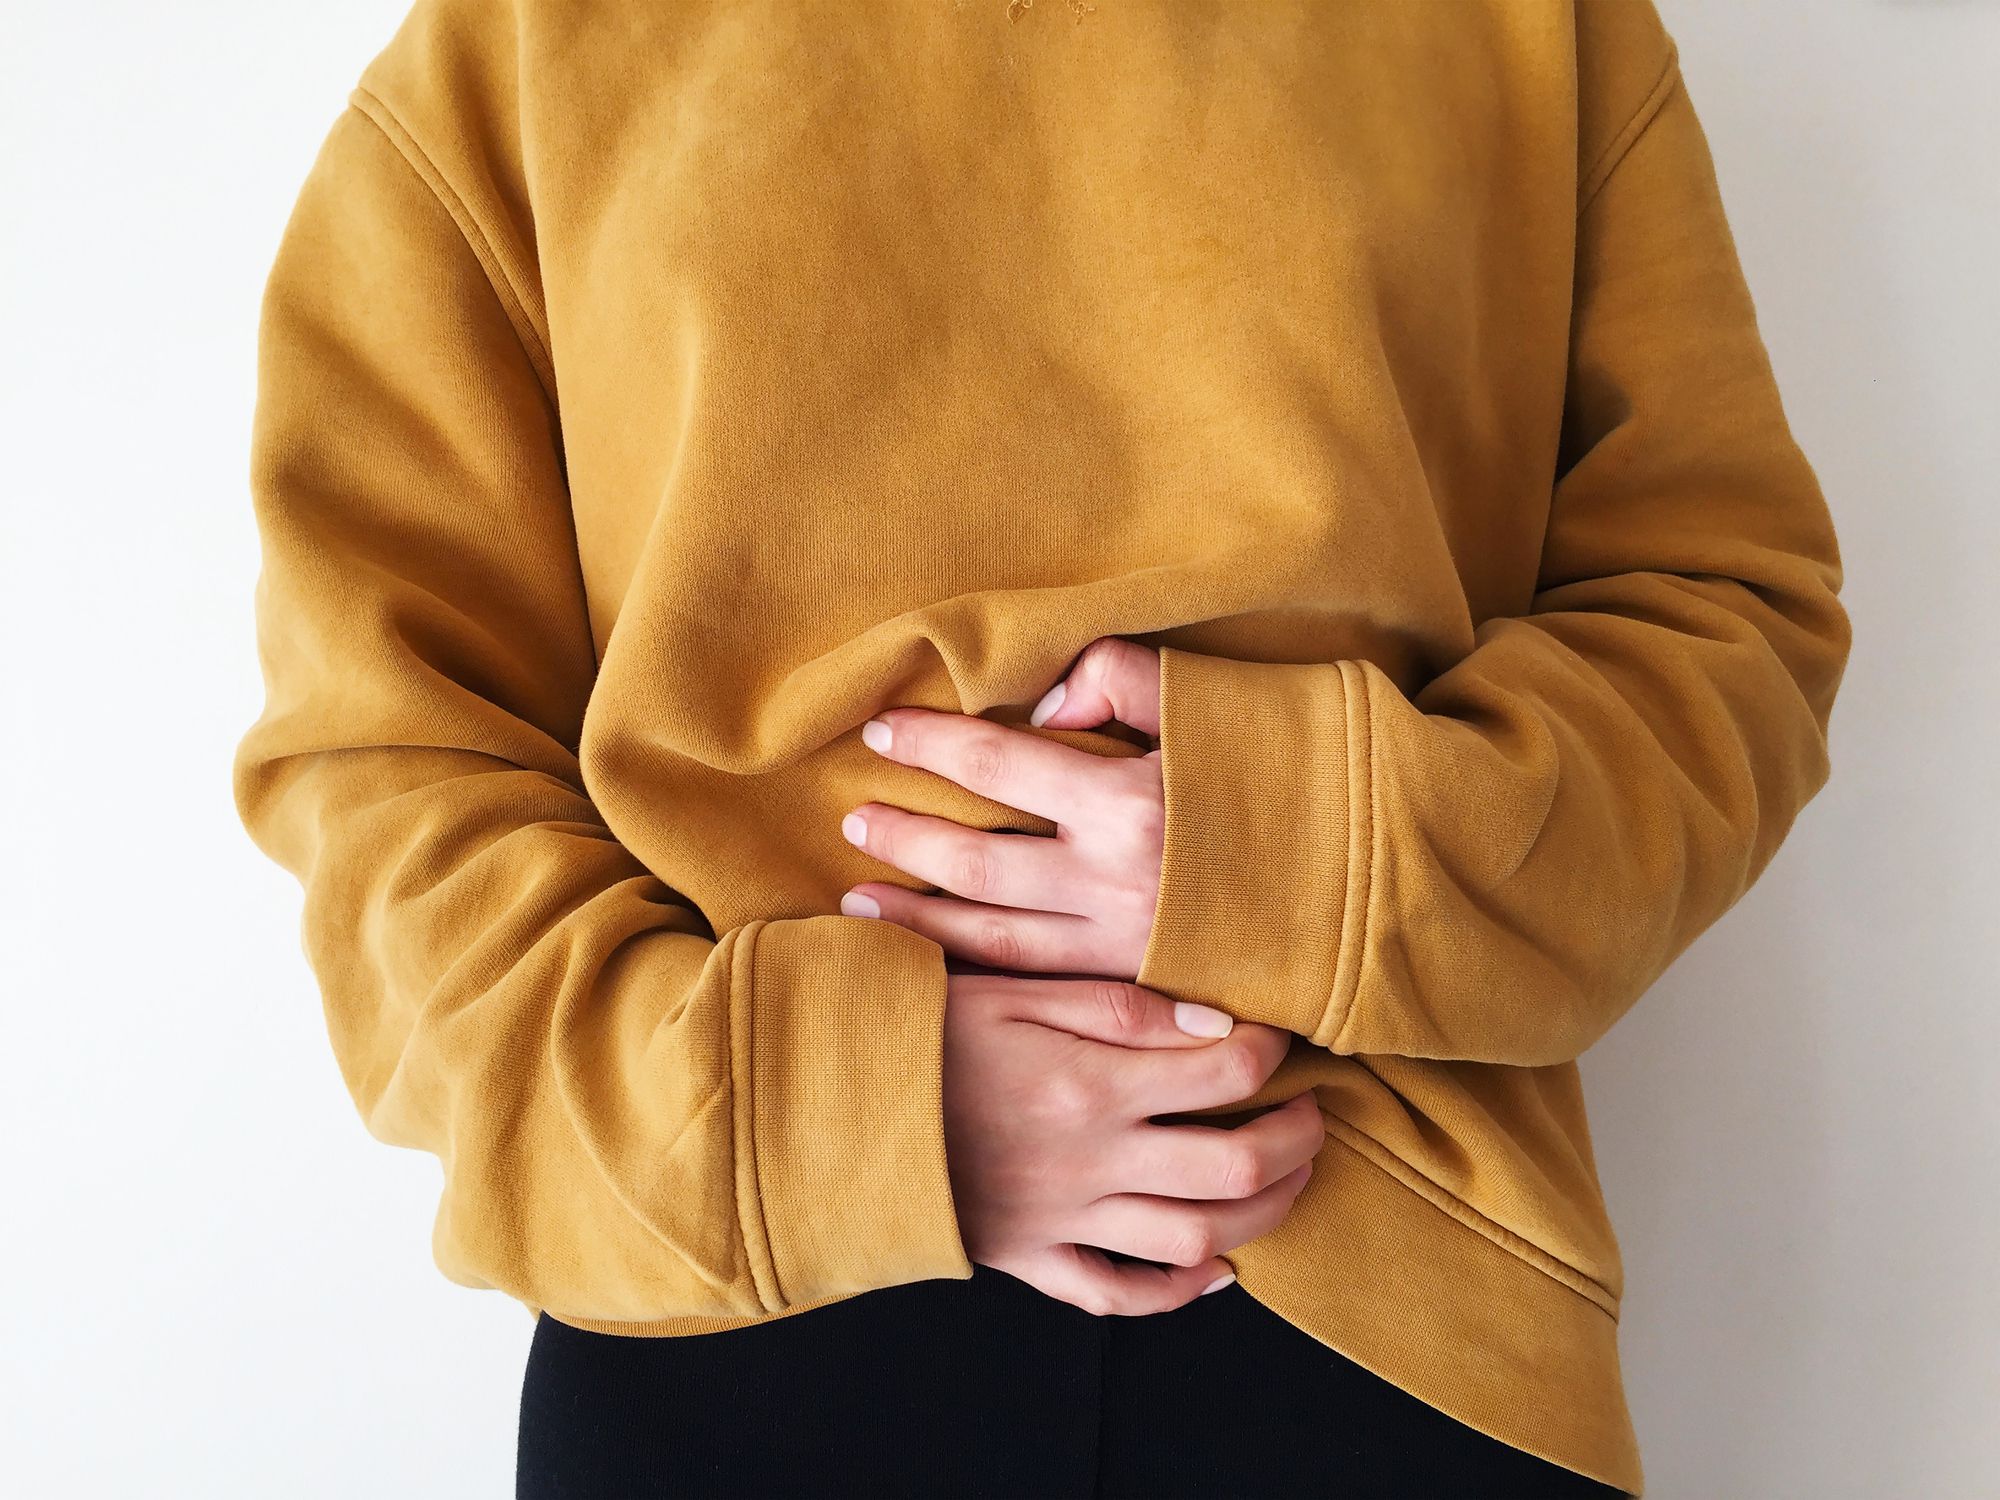 síndrome del intestino irritable: tratamiento dietético es más eficaz que medicamentos, según estudio